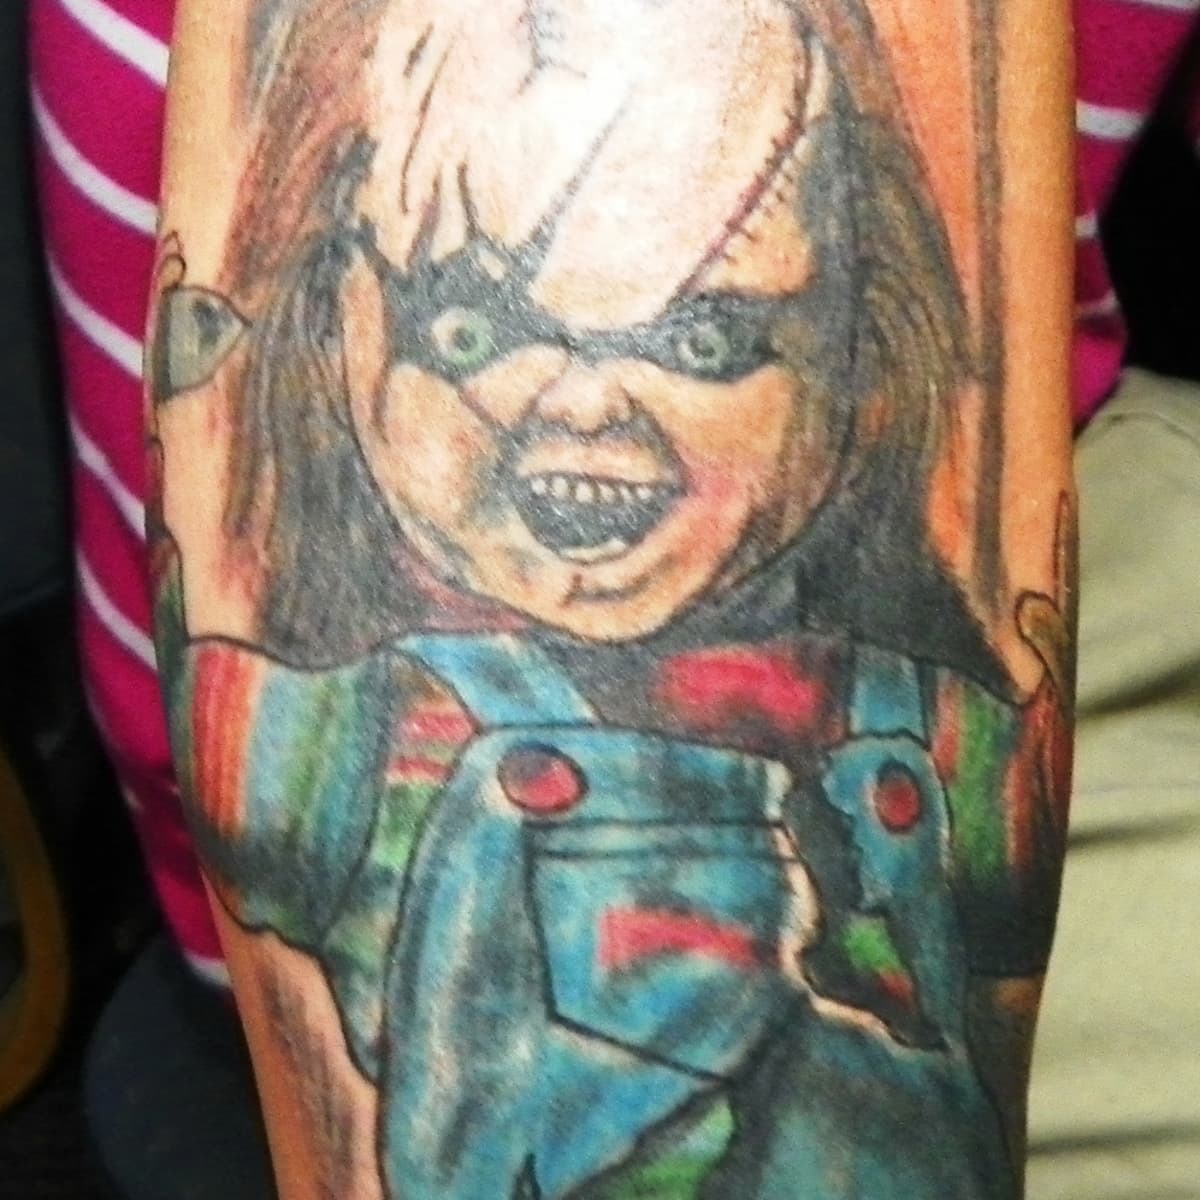 Tattoo uploaded by Alberto Delgado  Chucky knife tattoo  Tattoodo